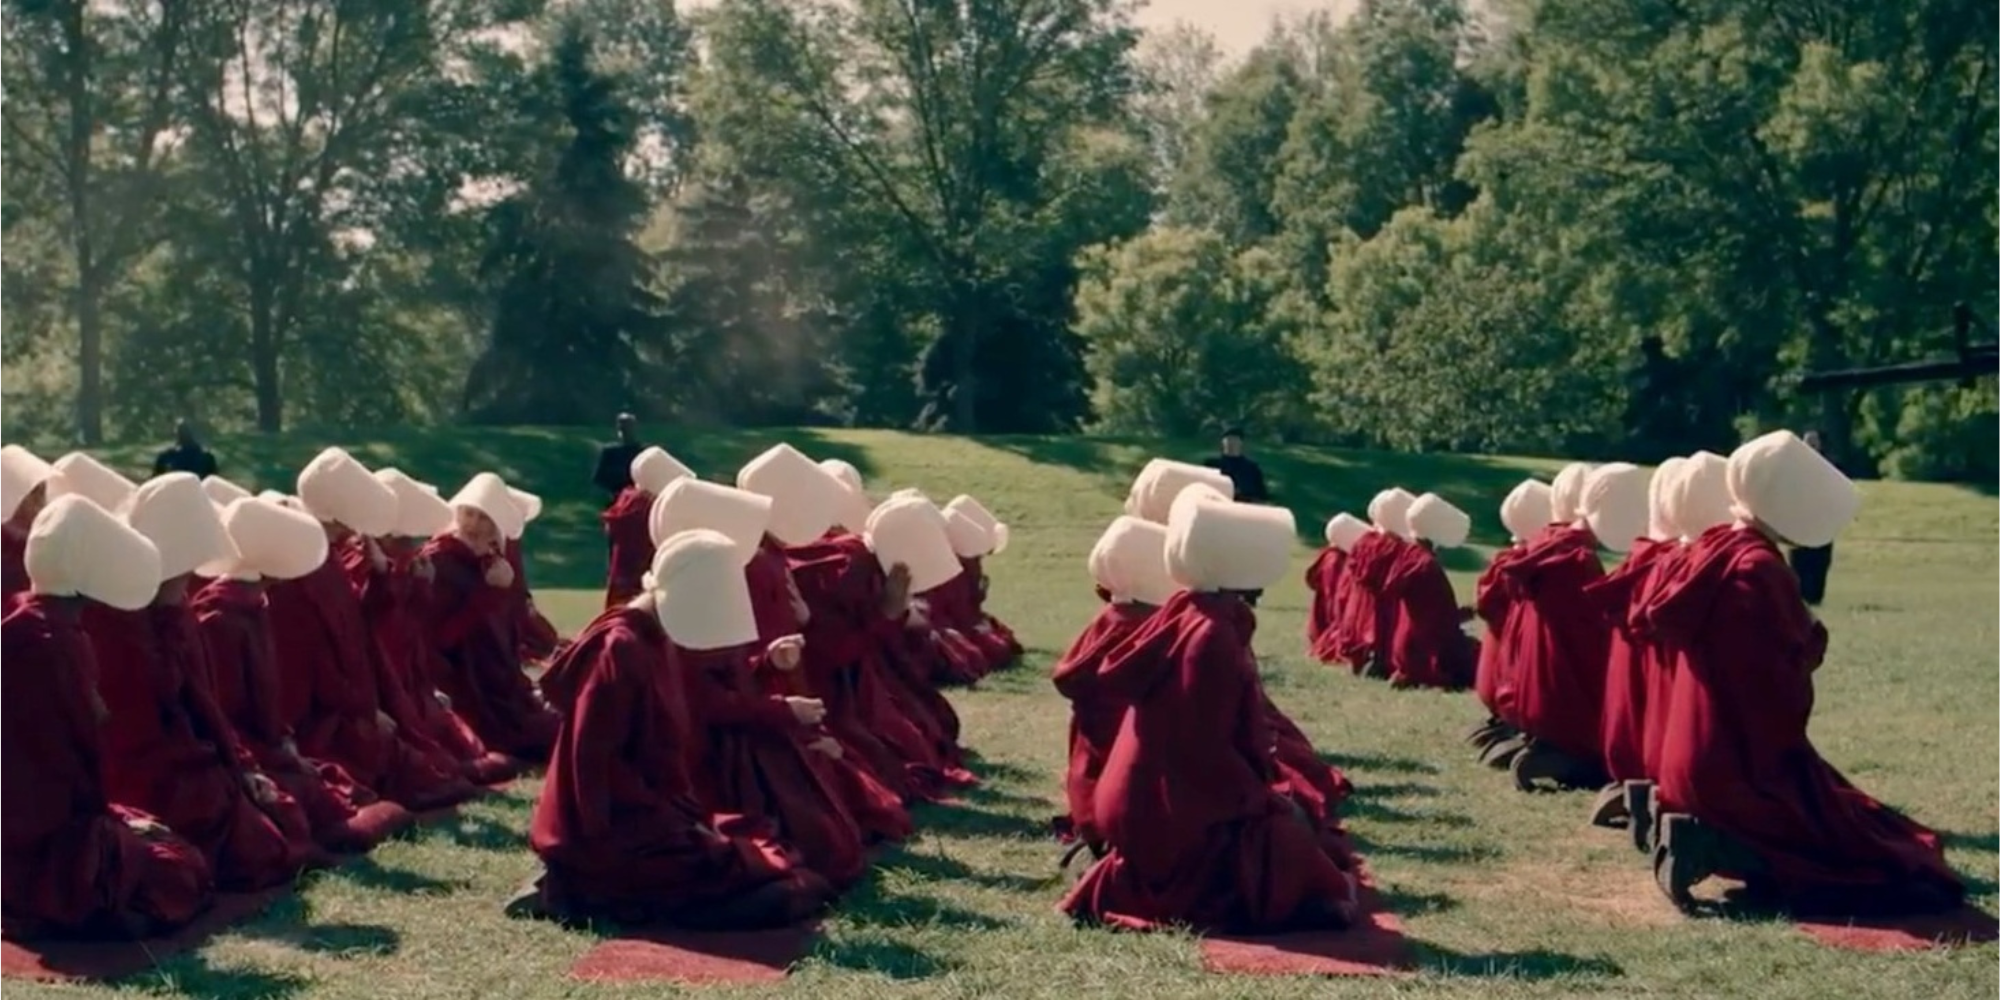 Rows of handmaids dressed in red kneeling down